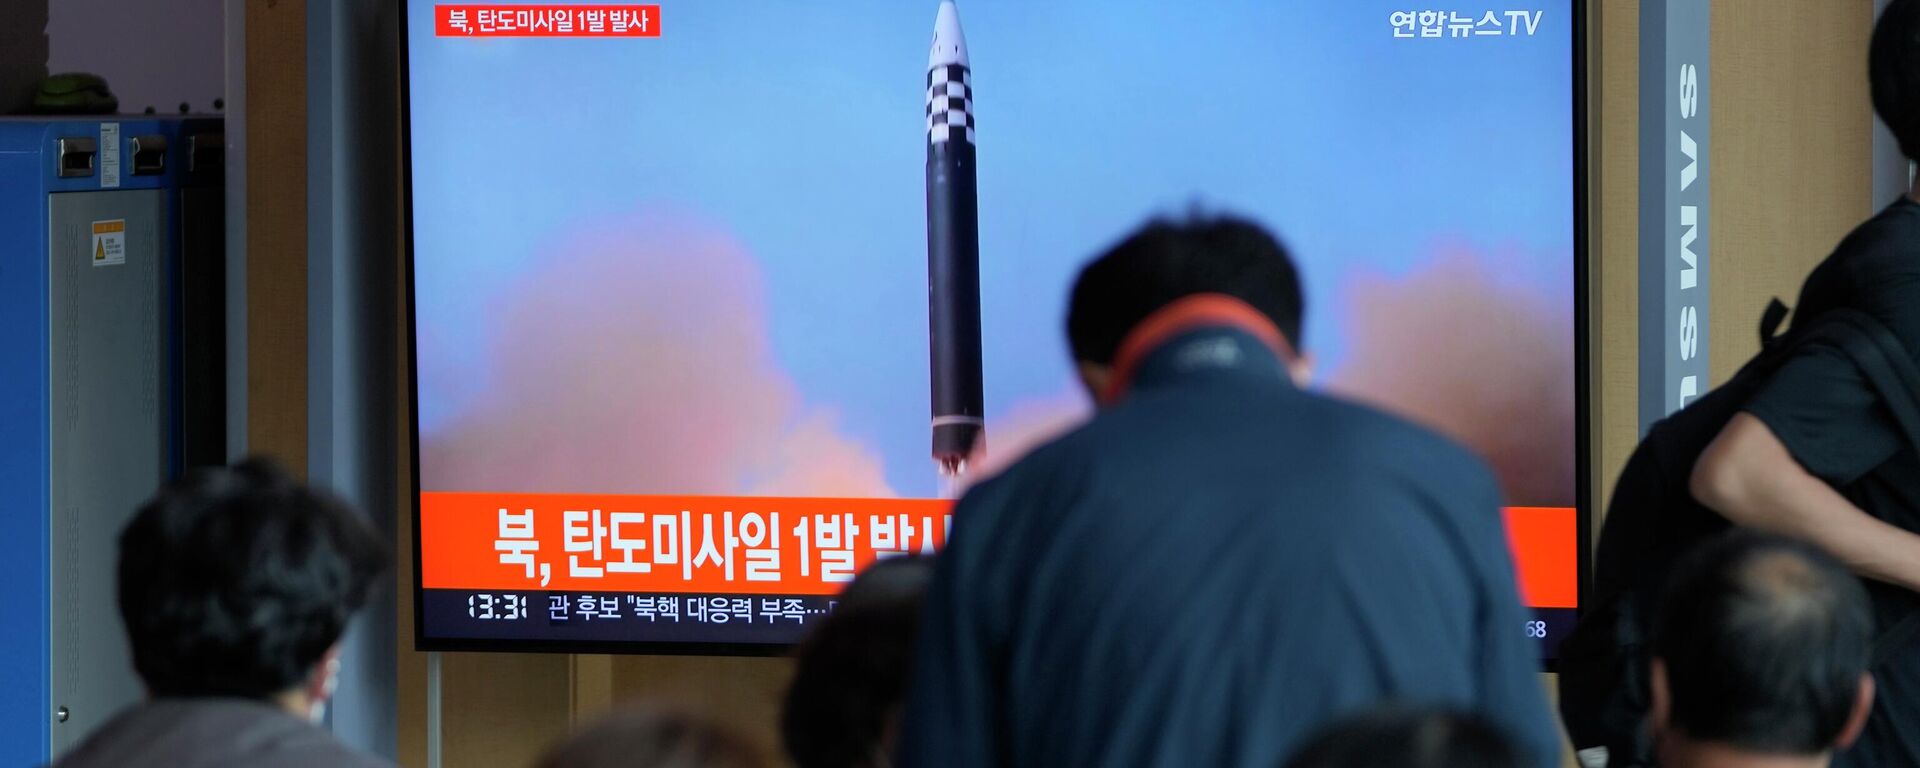 Lanzamiento de un misil por Pyongyang - Sputnik Mundo, 1920, 02.02.2023